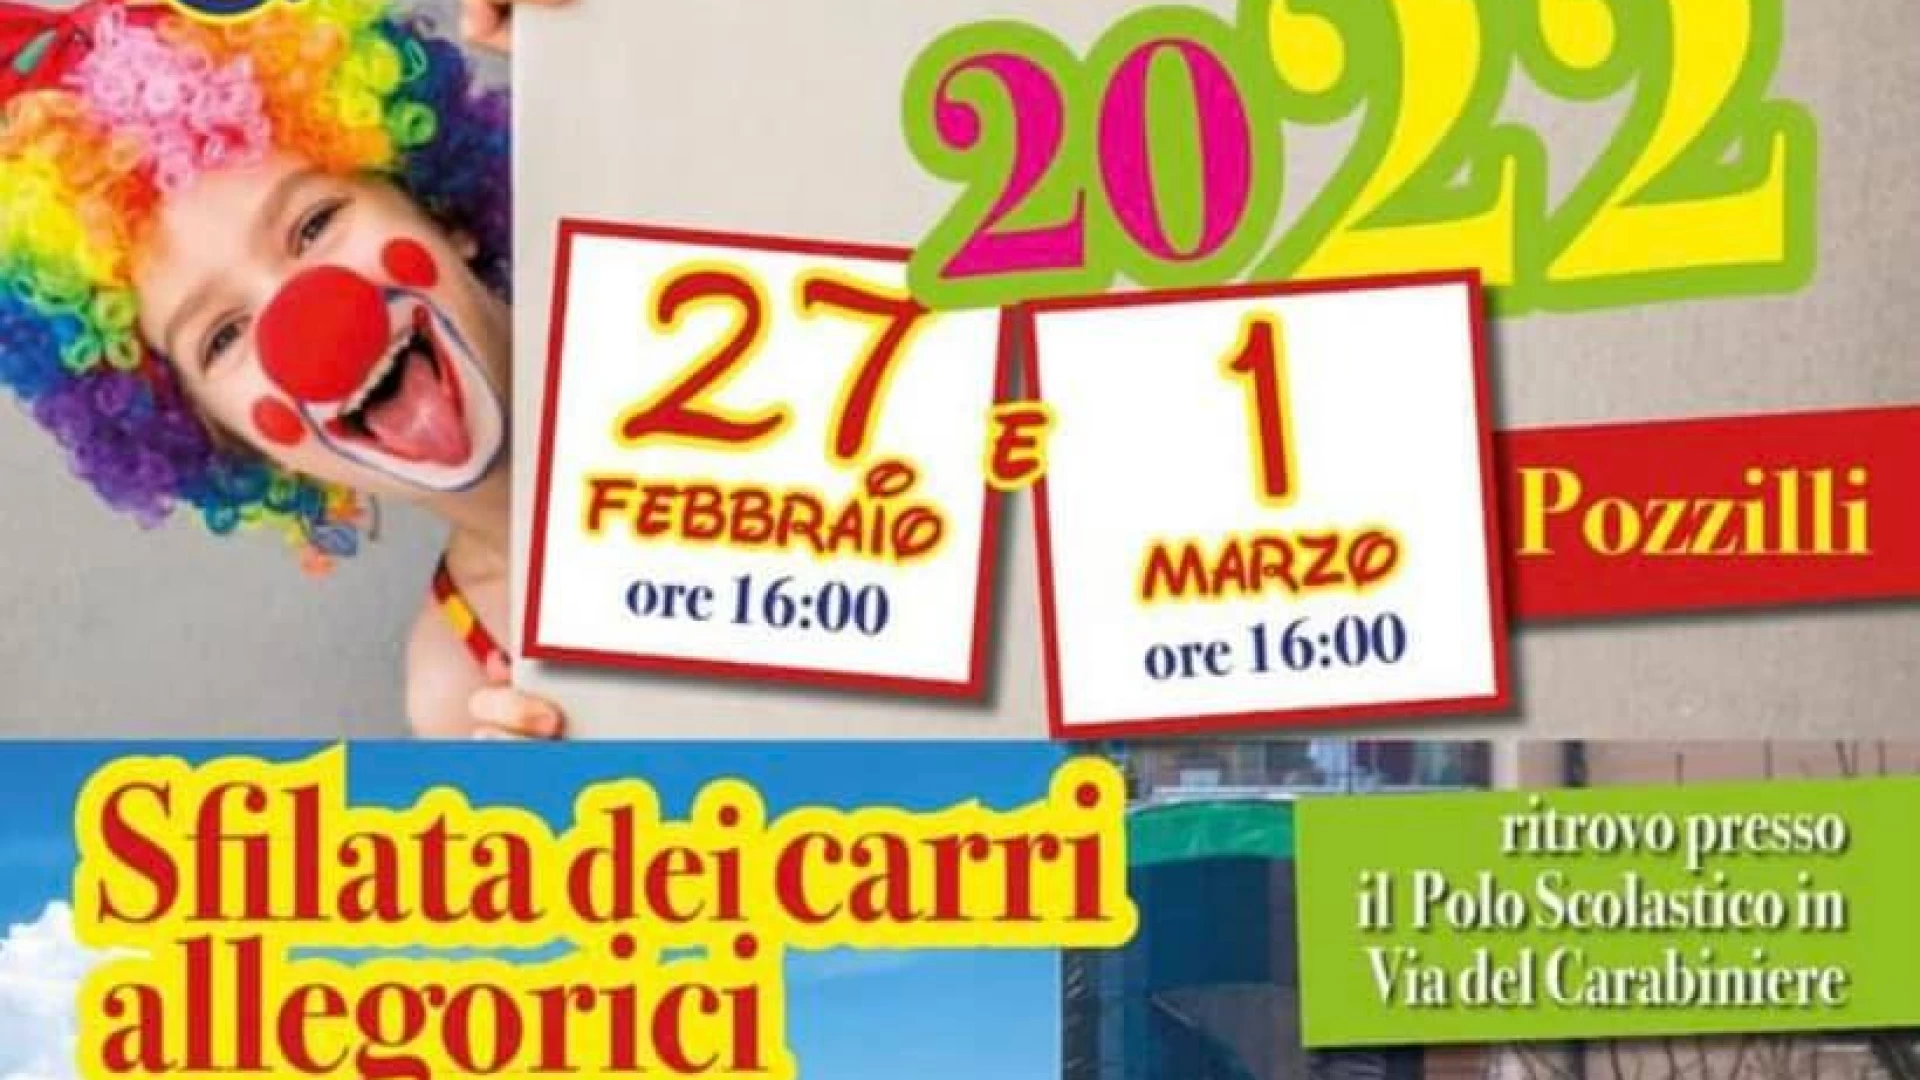 Pozzilli: l'Associazione "Noi Amici del Carnevale" propone due appuntamenti da non perdere. Consulta la locandina